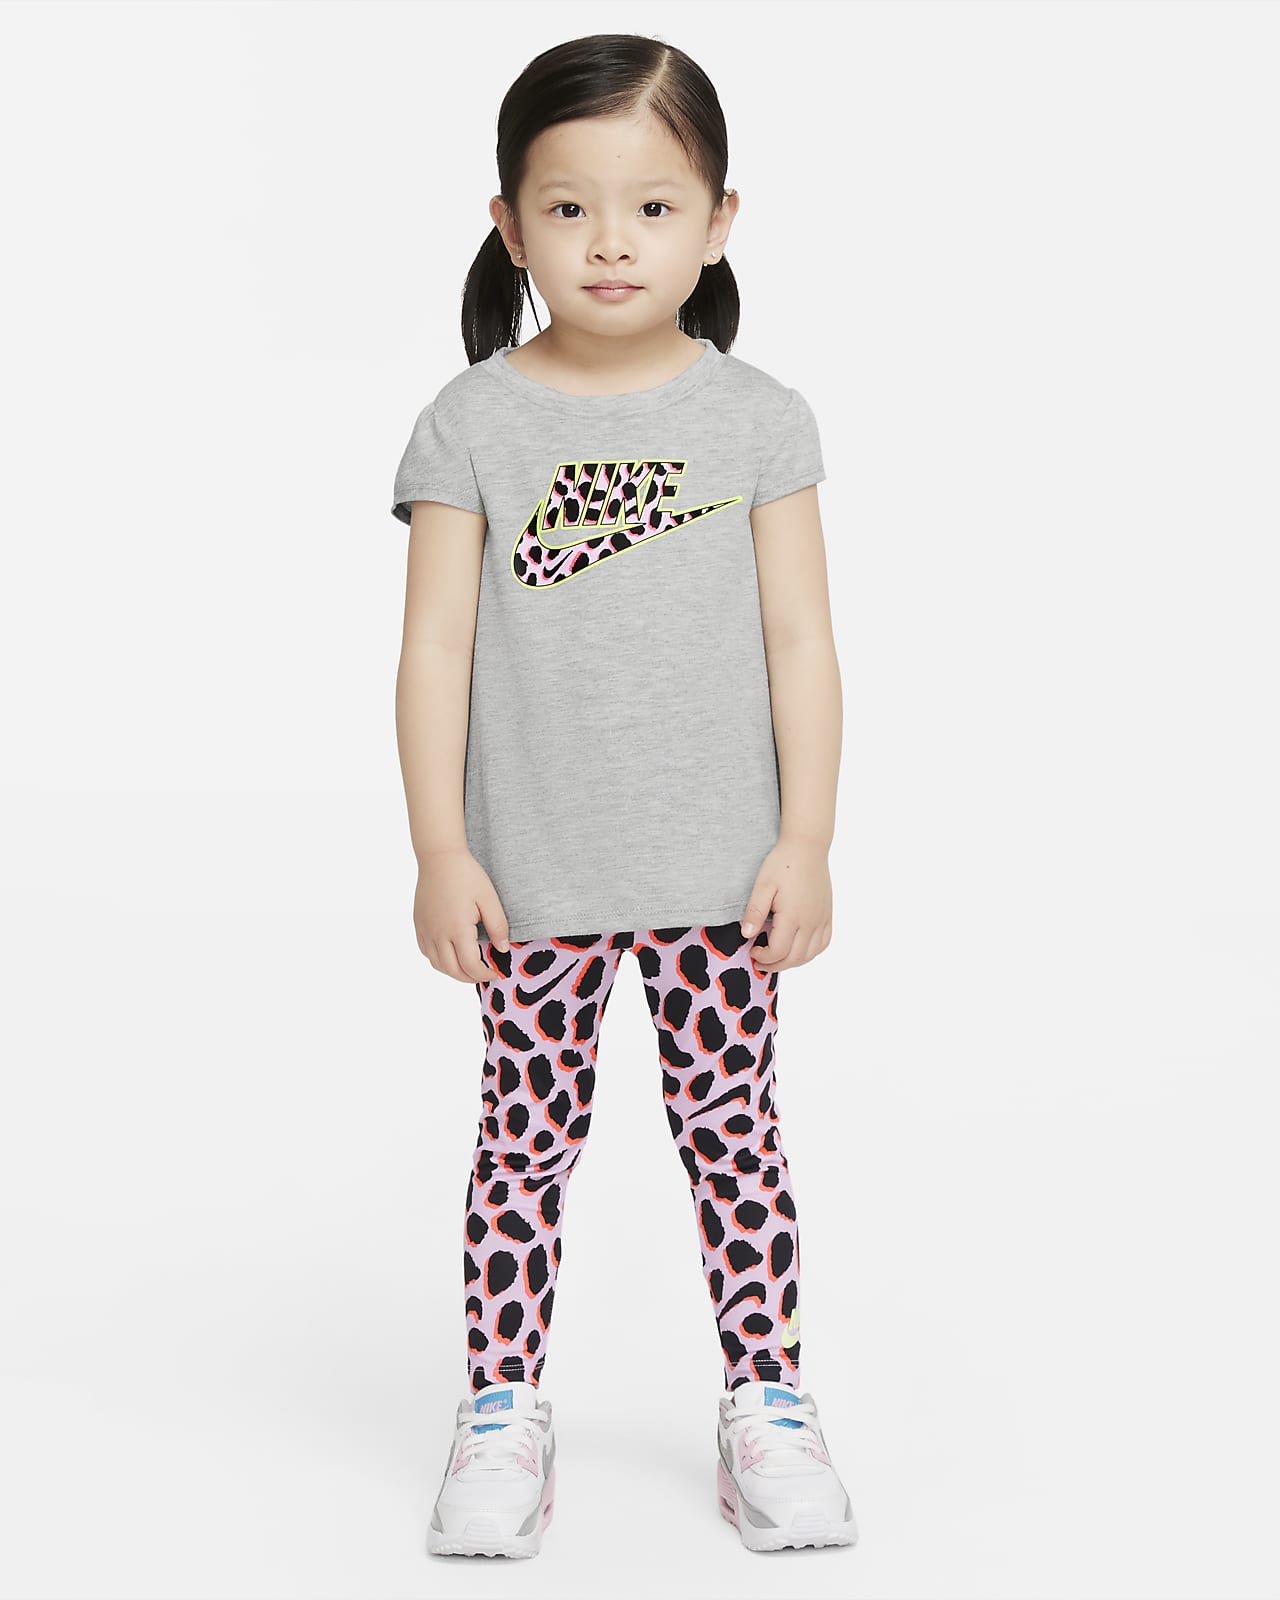 Nike Toddler T-Shirt and Leggings Set. Nike LU